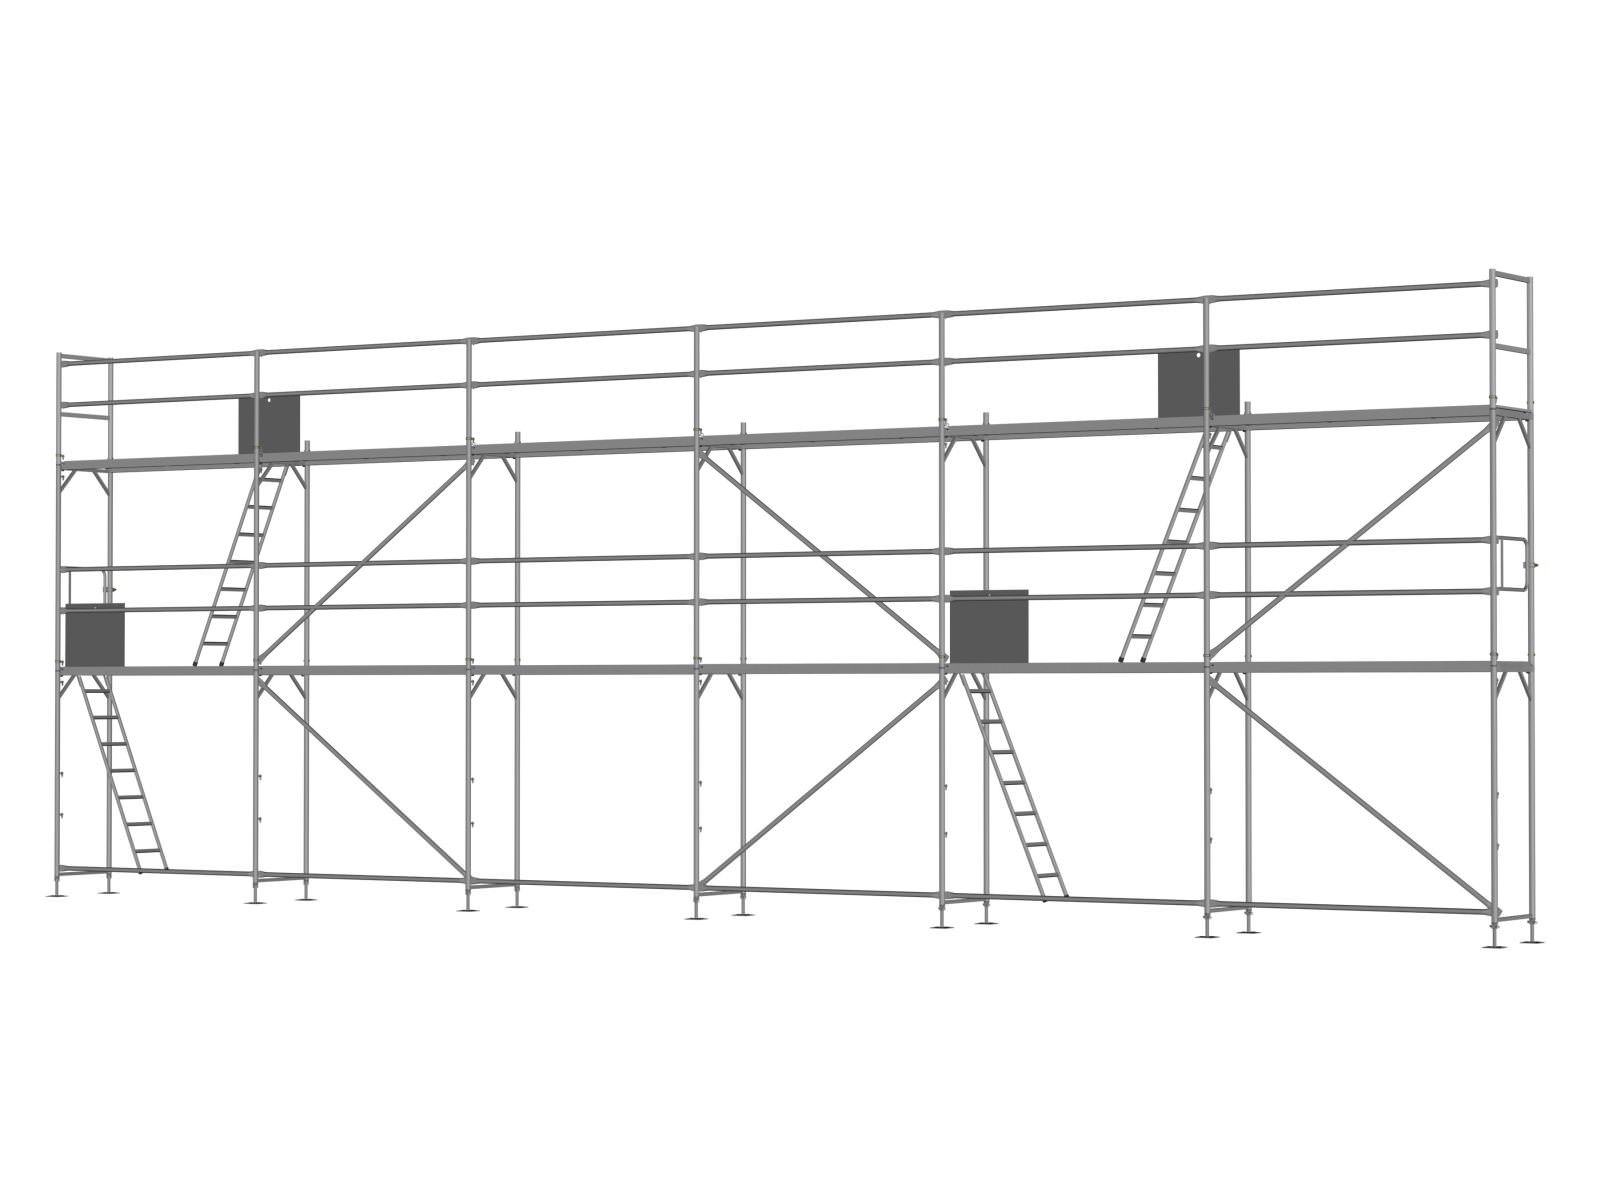  Alu Traufseitengerüst 90 qm - 2,5 m Felder - 15 m lang - 6 m Arbeitshöhe - Basis-Gerüst inkl. Aufstieg & Befestigung